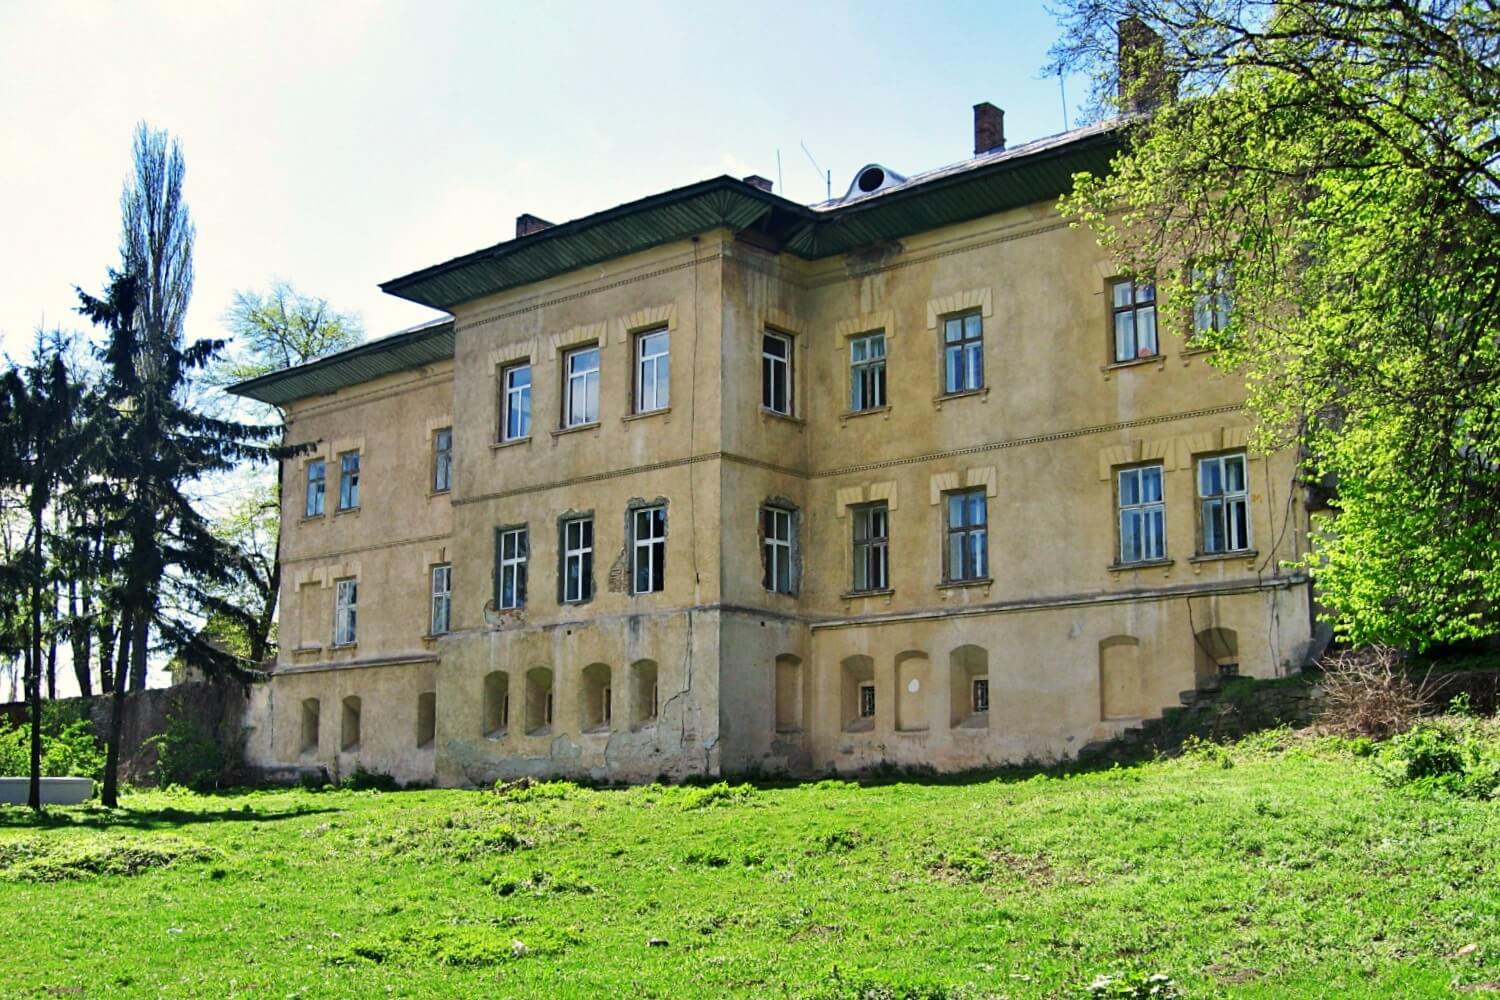 Cantacuzino-Deleanu Mansion